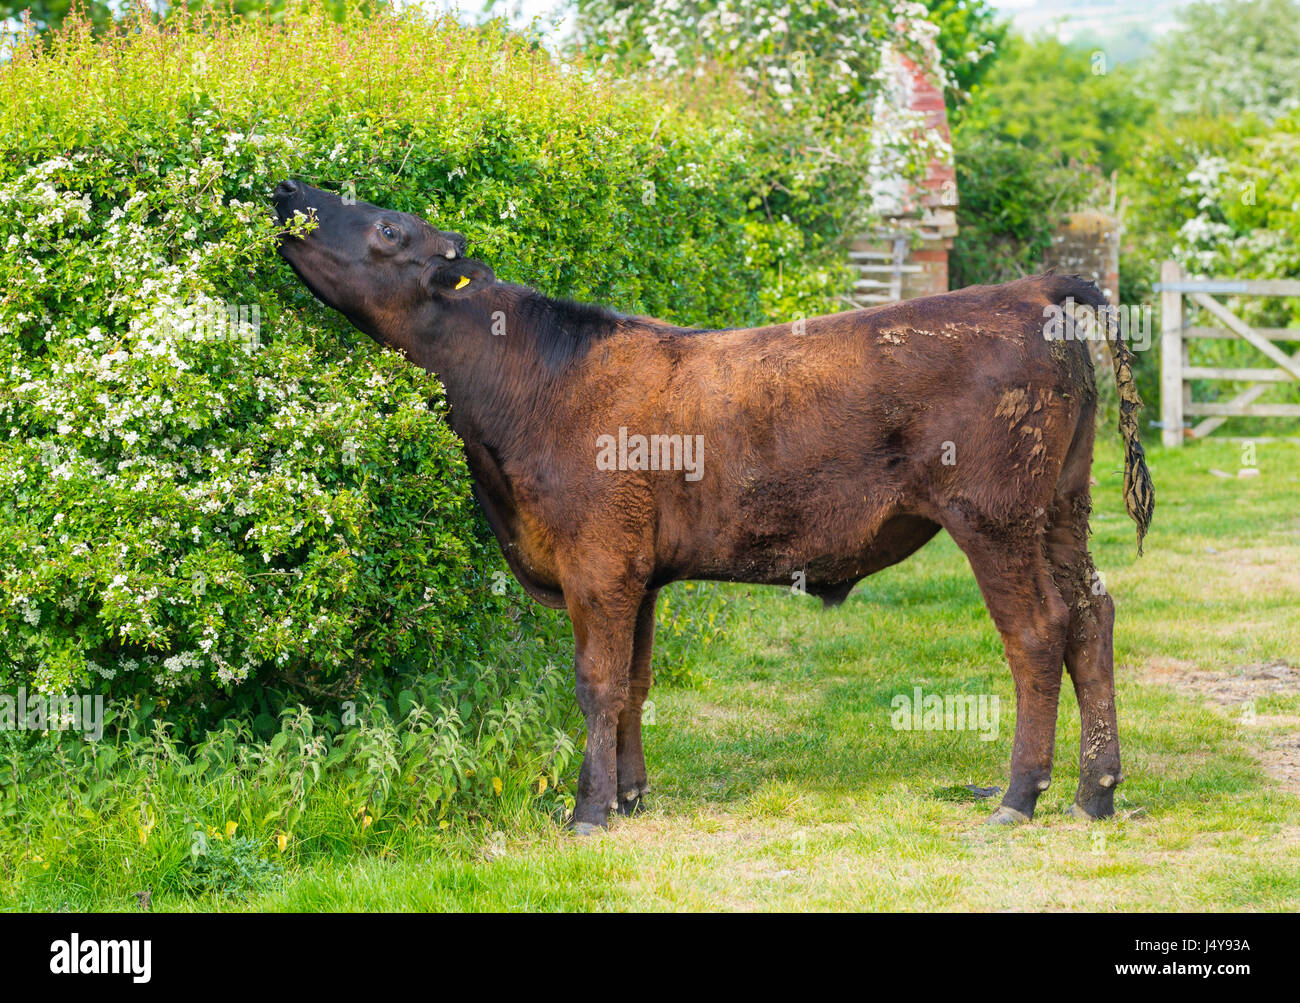 Kuh Essen Laub aus einem Busch. Größe Blick einer Kuh, die Dehnung des Halses bis zu erreichen Blätter zu essen. Stockfoto